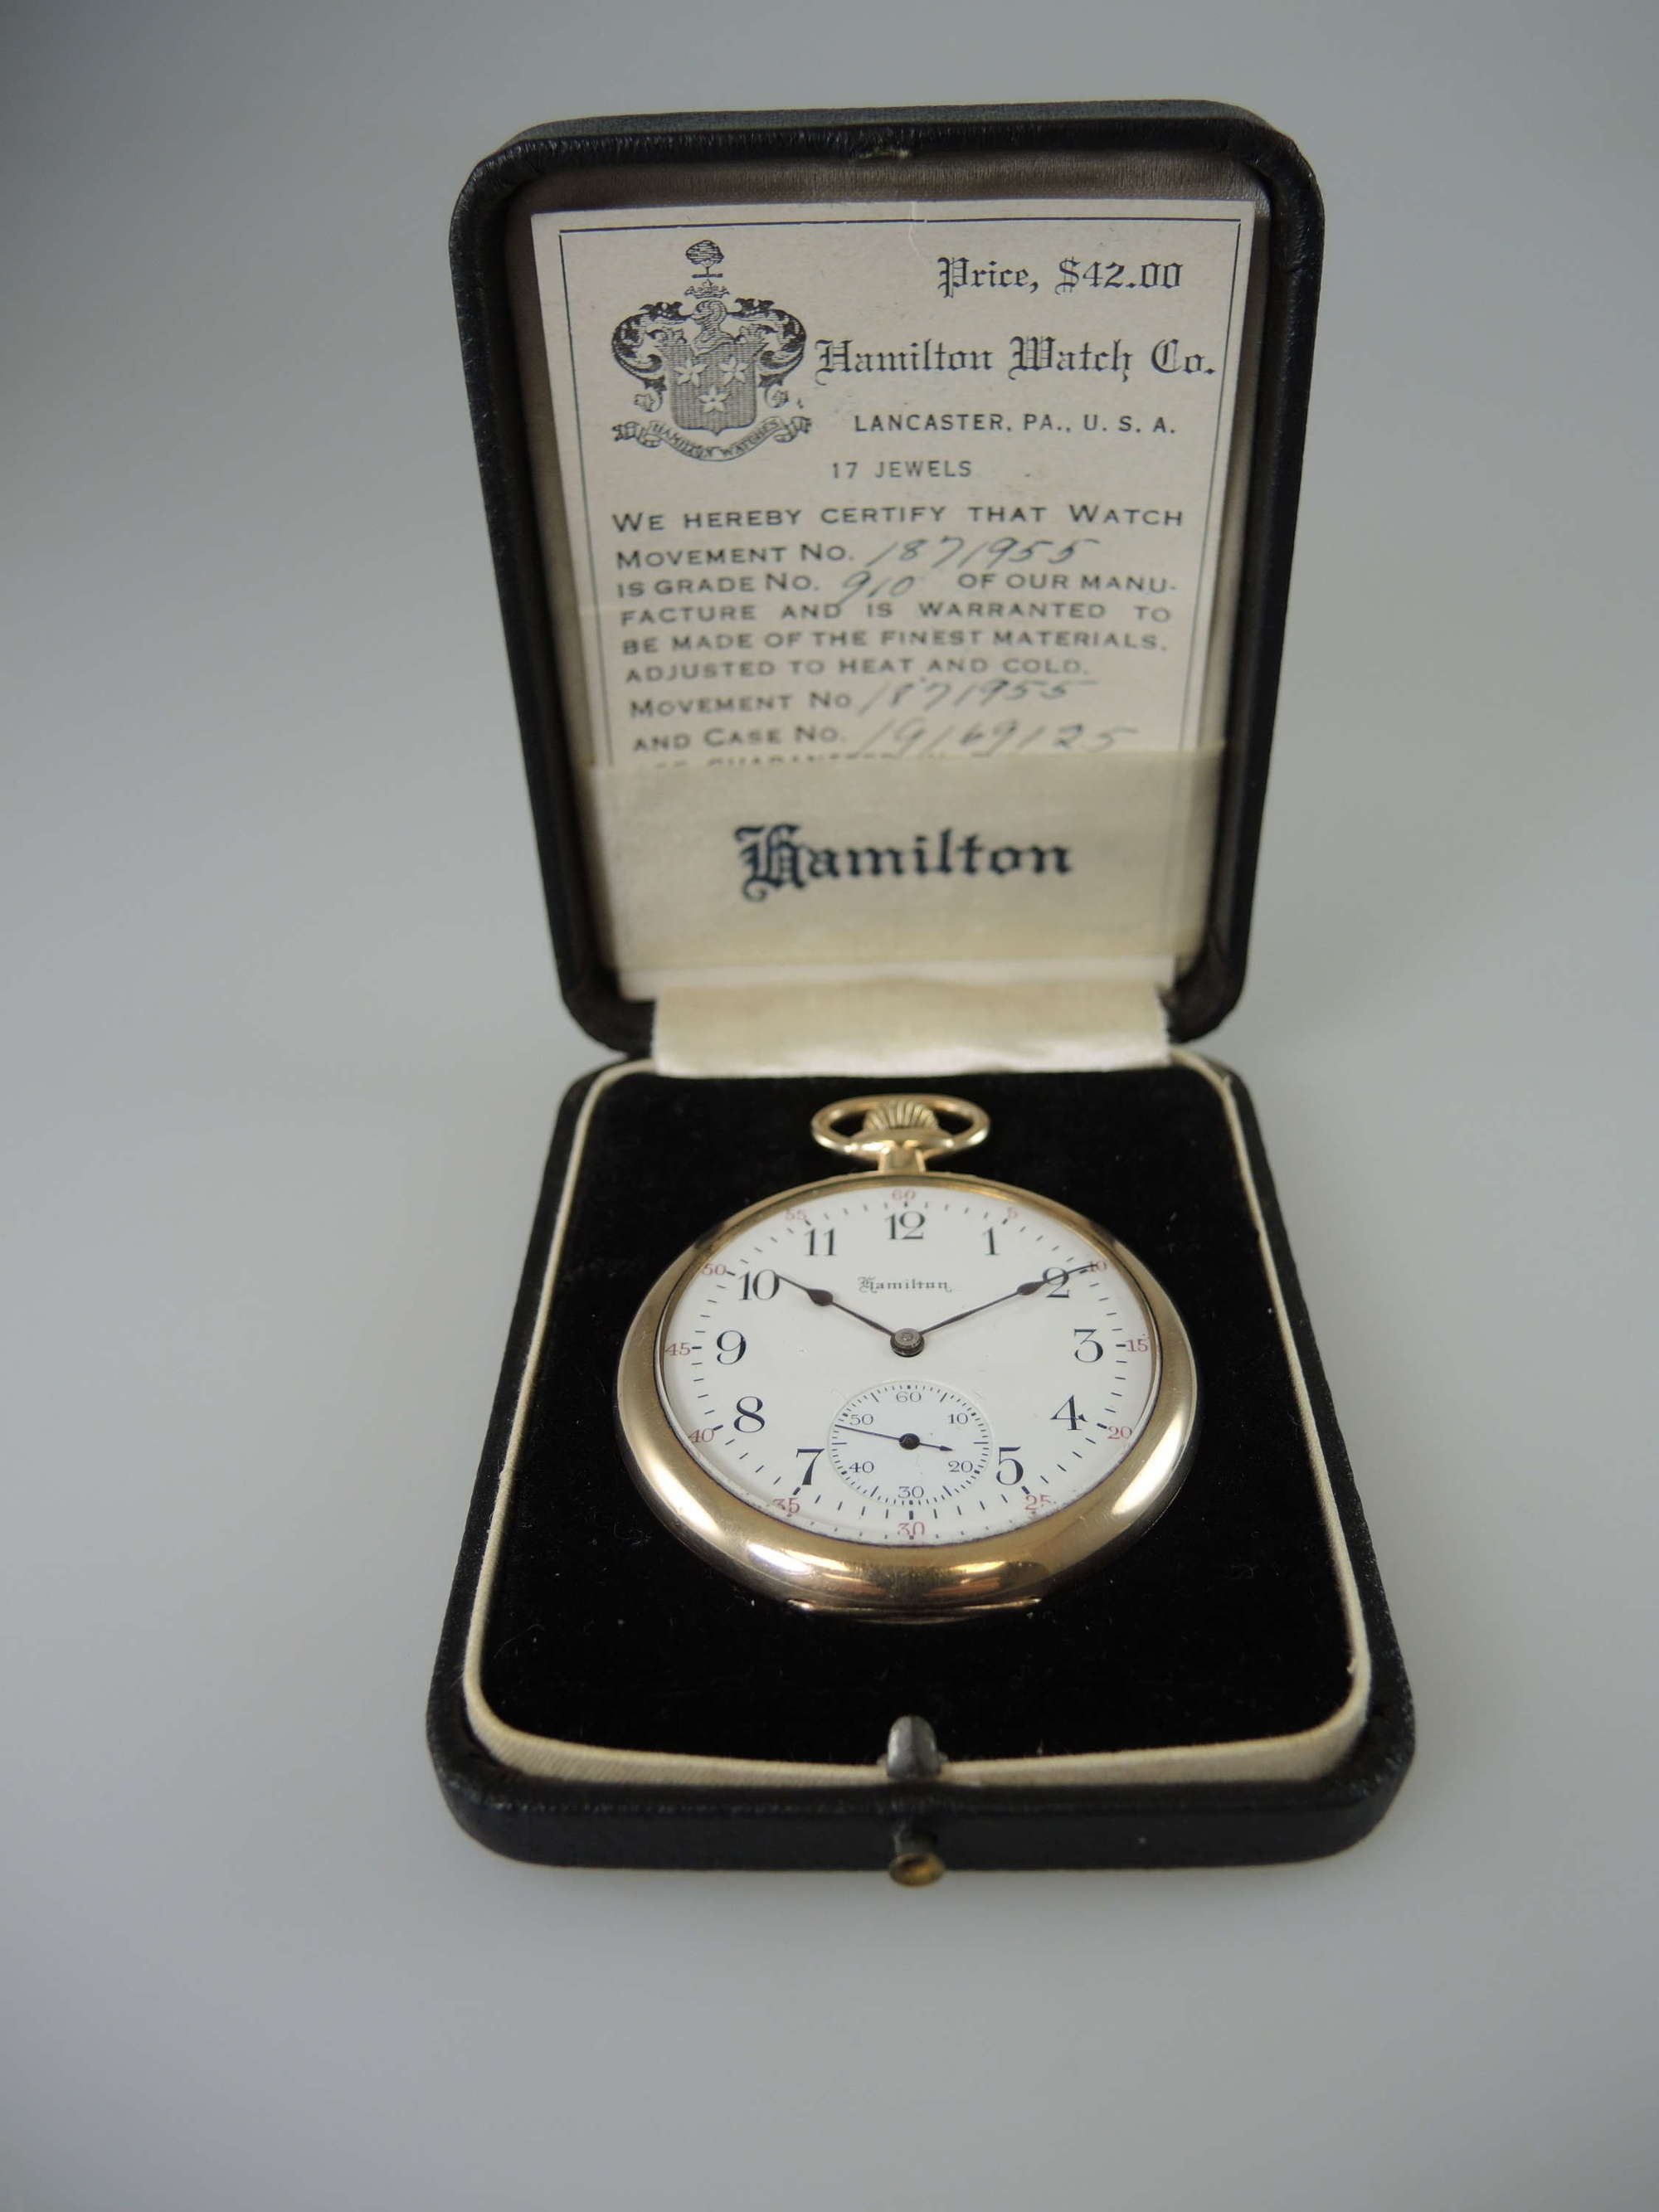 Vintage Hamilton pocket watch in its original box c1920